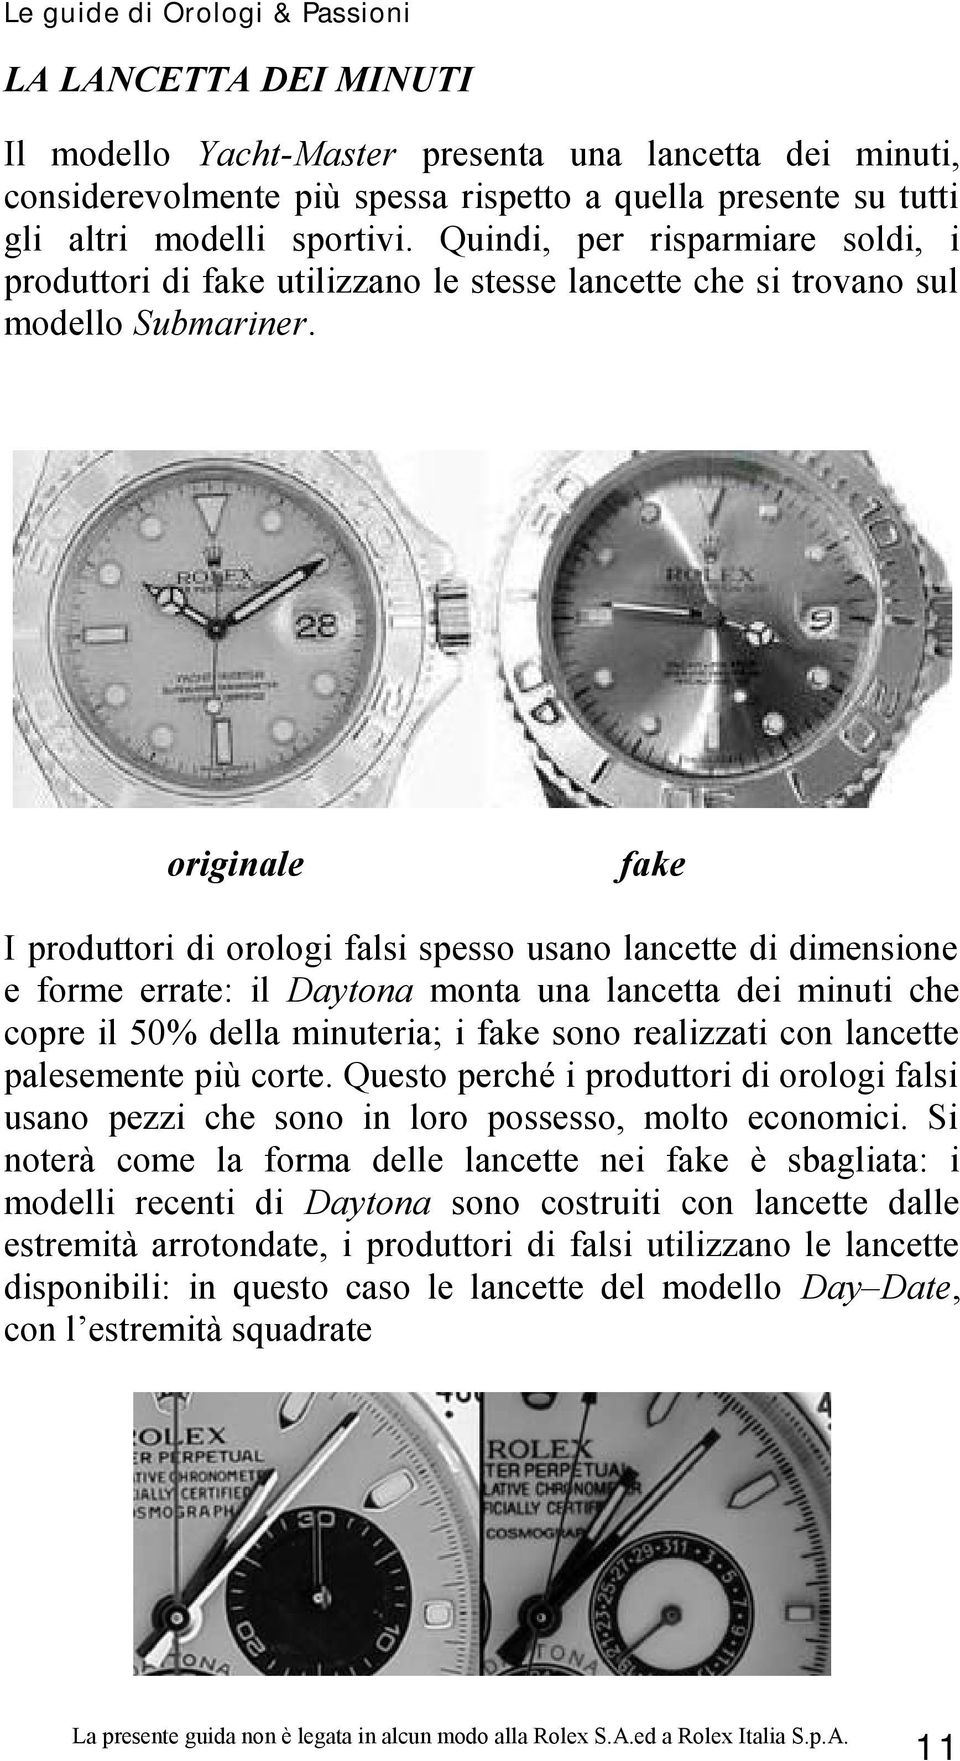 fake I produttori di orologi falsi spesso usano lancette di dimensione e forme errate: il Daytona monta una lancetta dei minuti che copre il 50% della minuteria; i fake sono realizzati con lancette